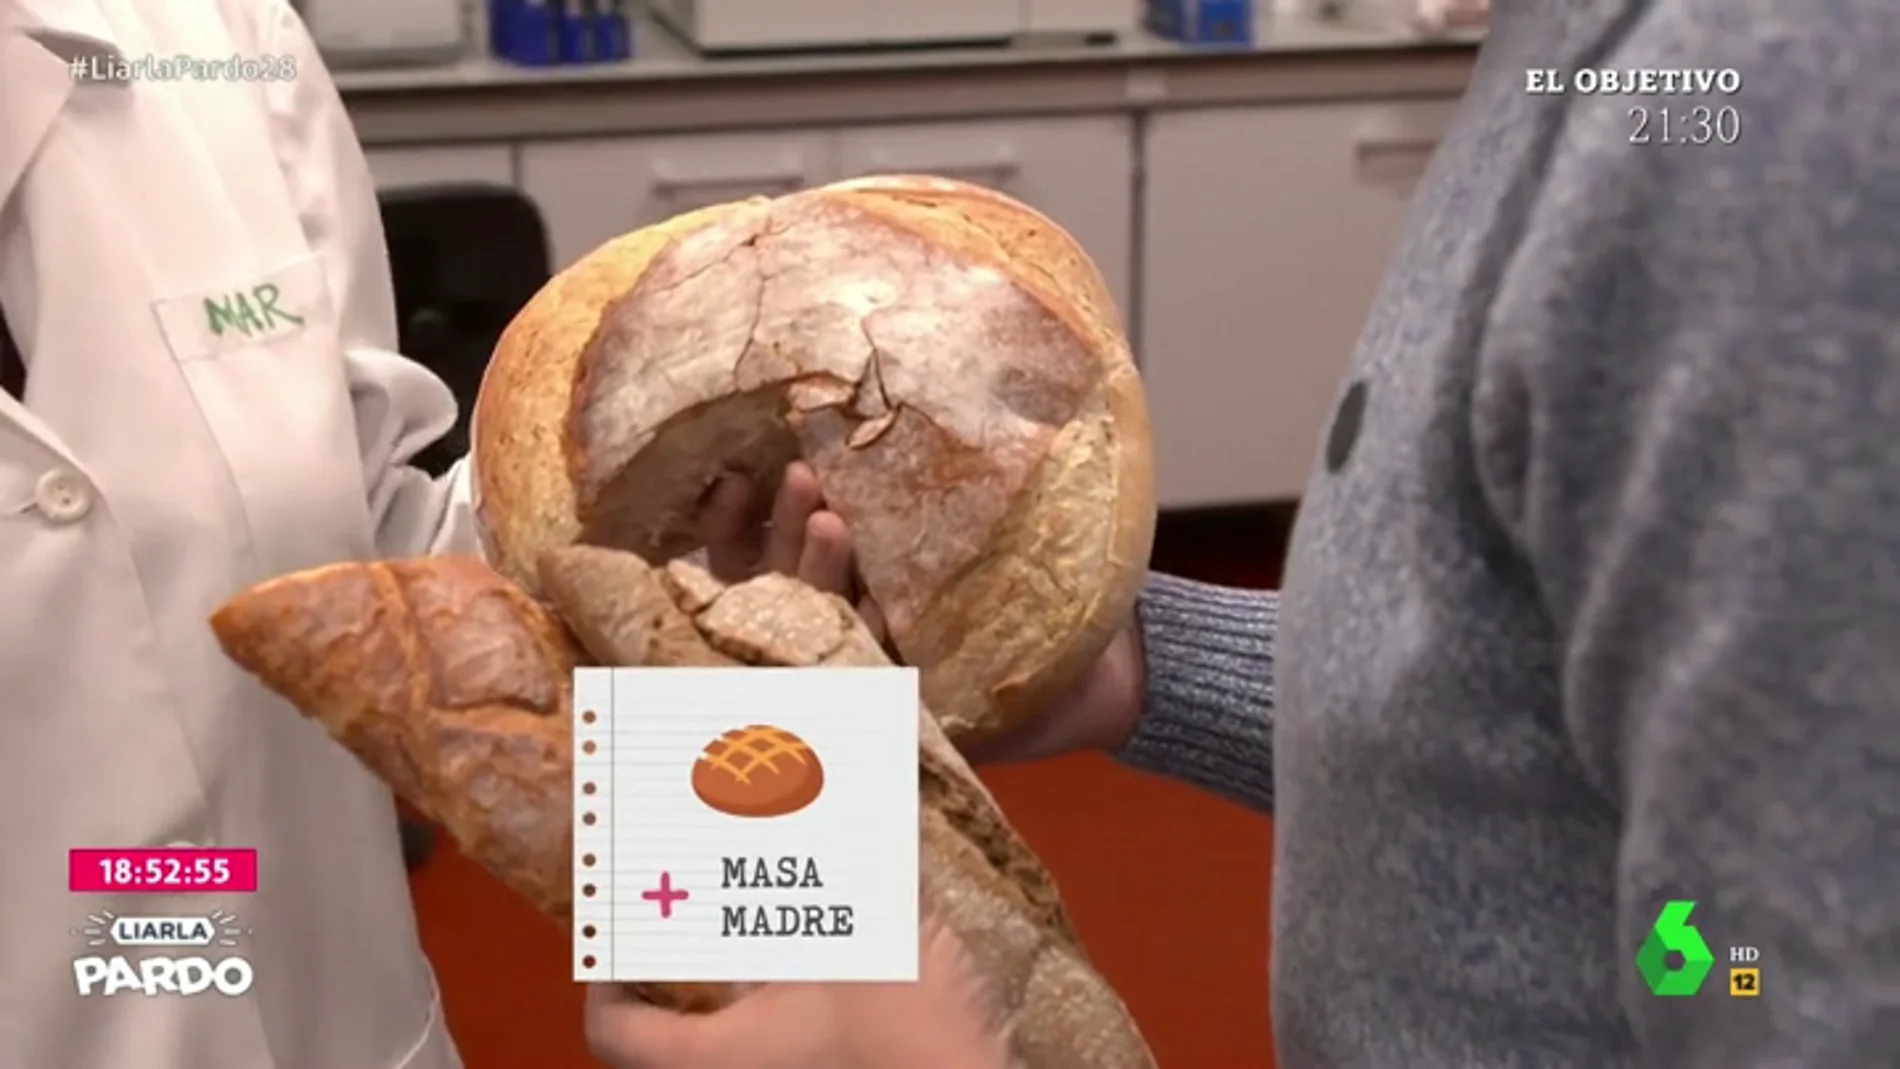 El análisis en un laboratorio deja al descubierto el fraude del pan: las mentiras que a veces nos venden con la excusa de la masa madre